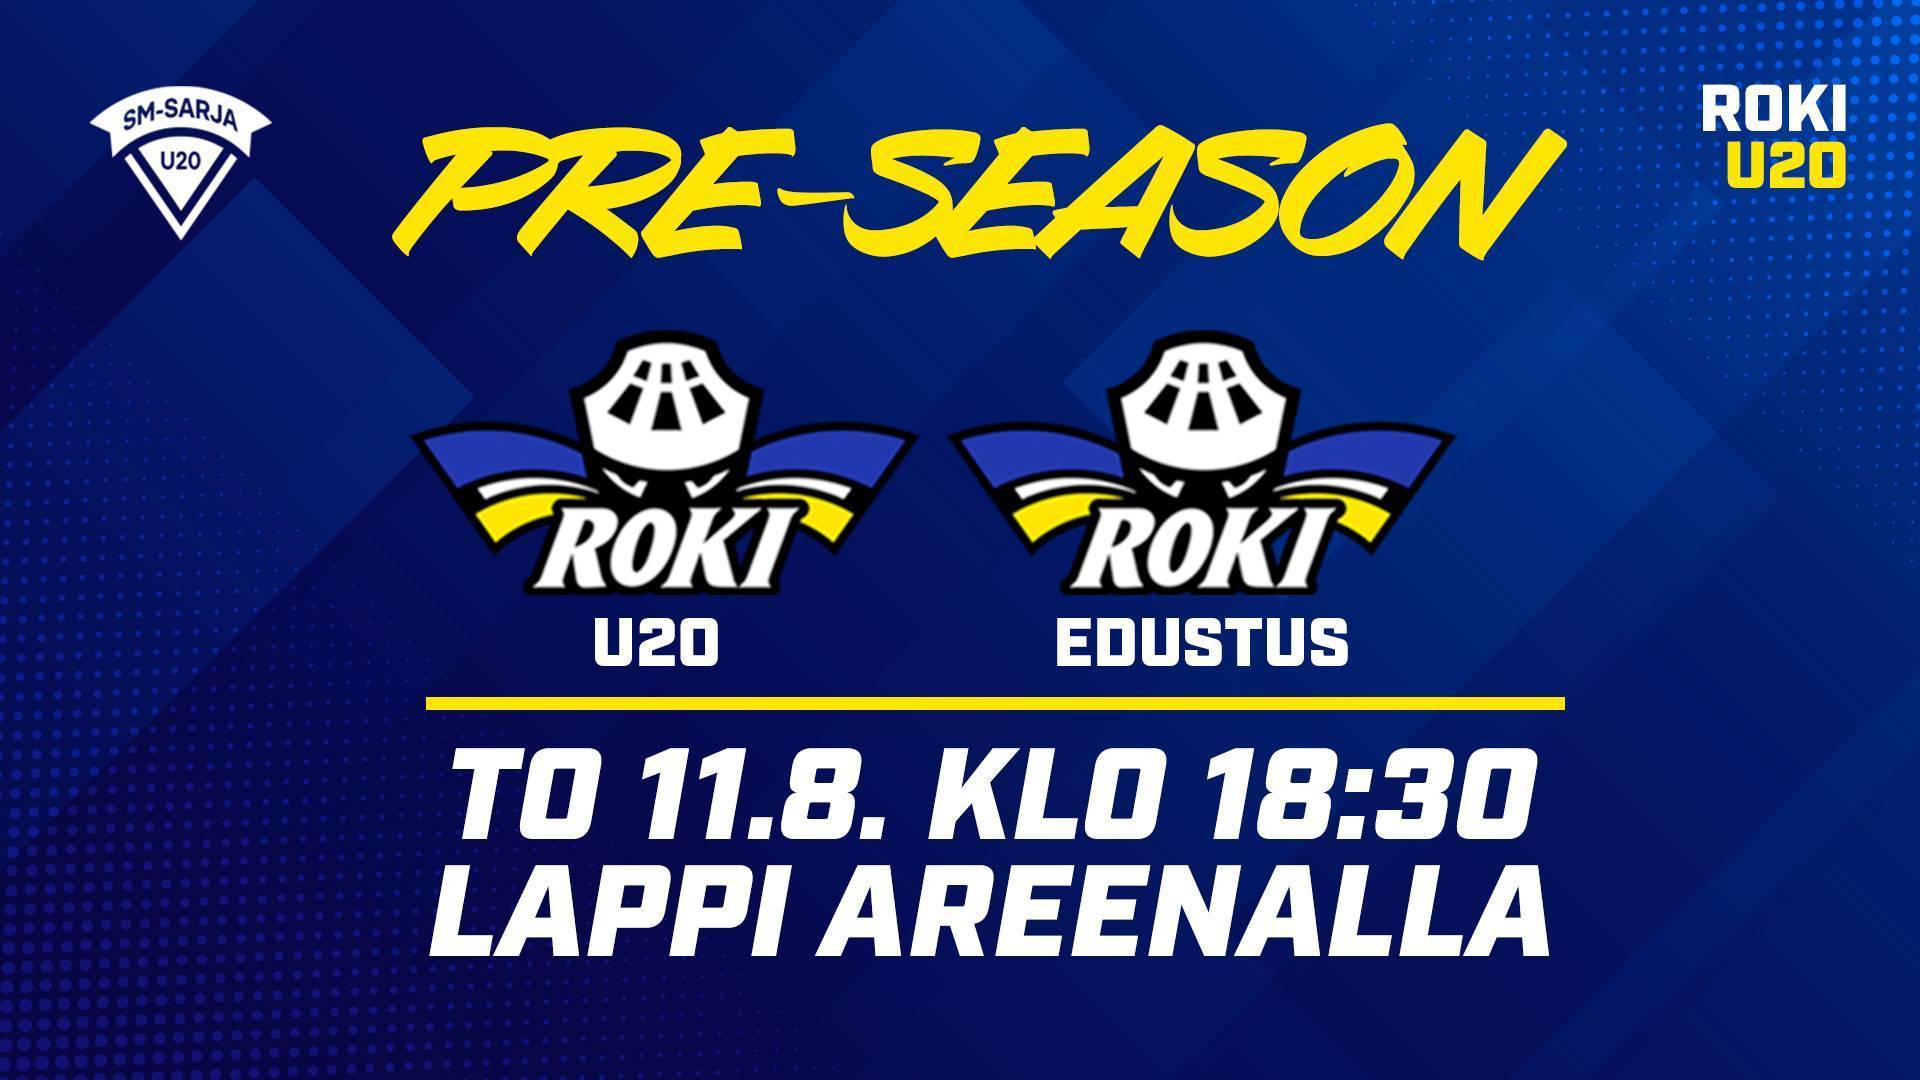 U20 pre-season ottelut käyntiin torstaina Lappi Areenalla - otteluinfo